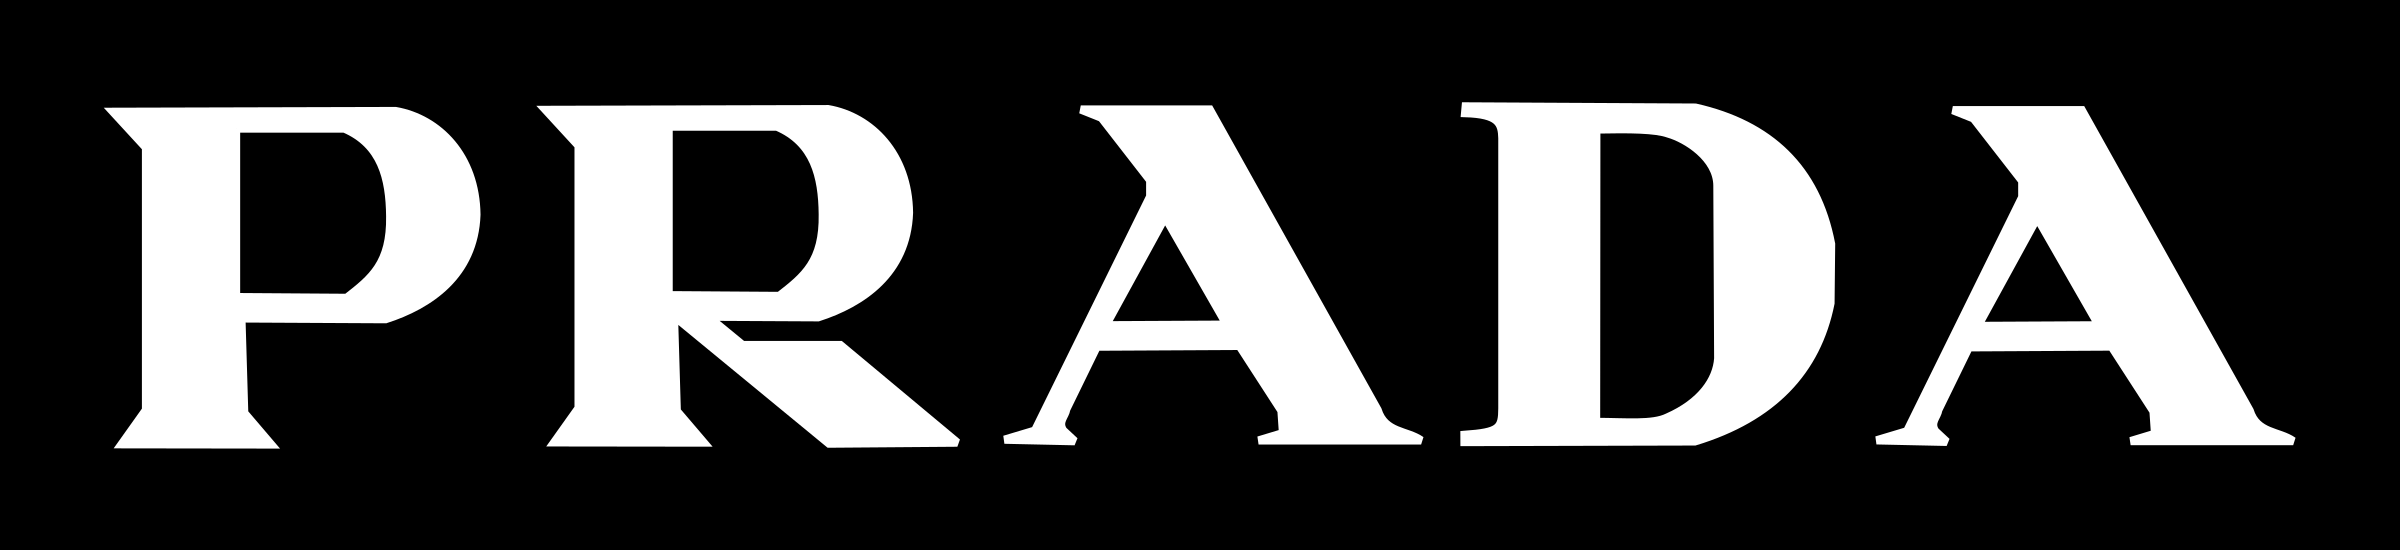 Prada Logo - Prada Logo PNG Transparent & SVG Vector